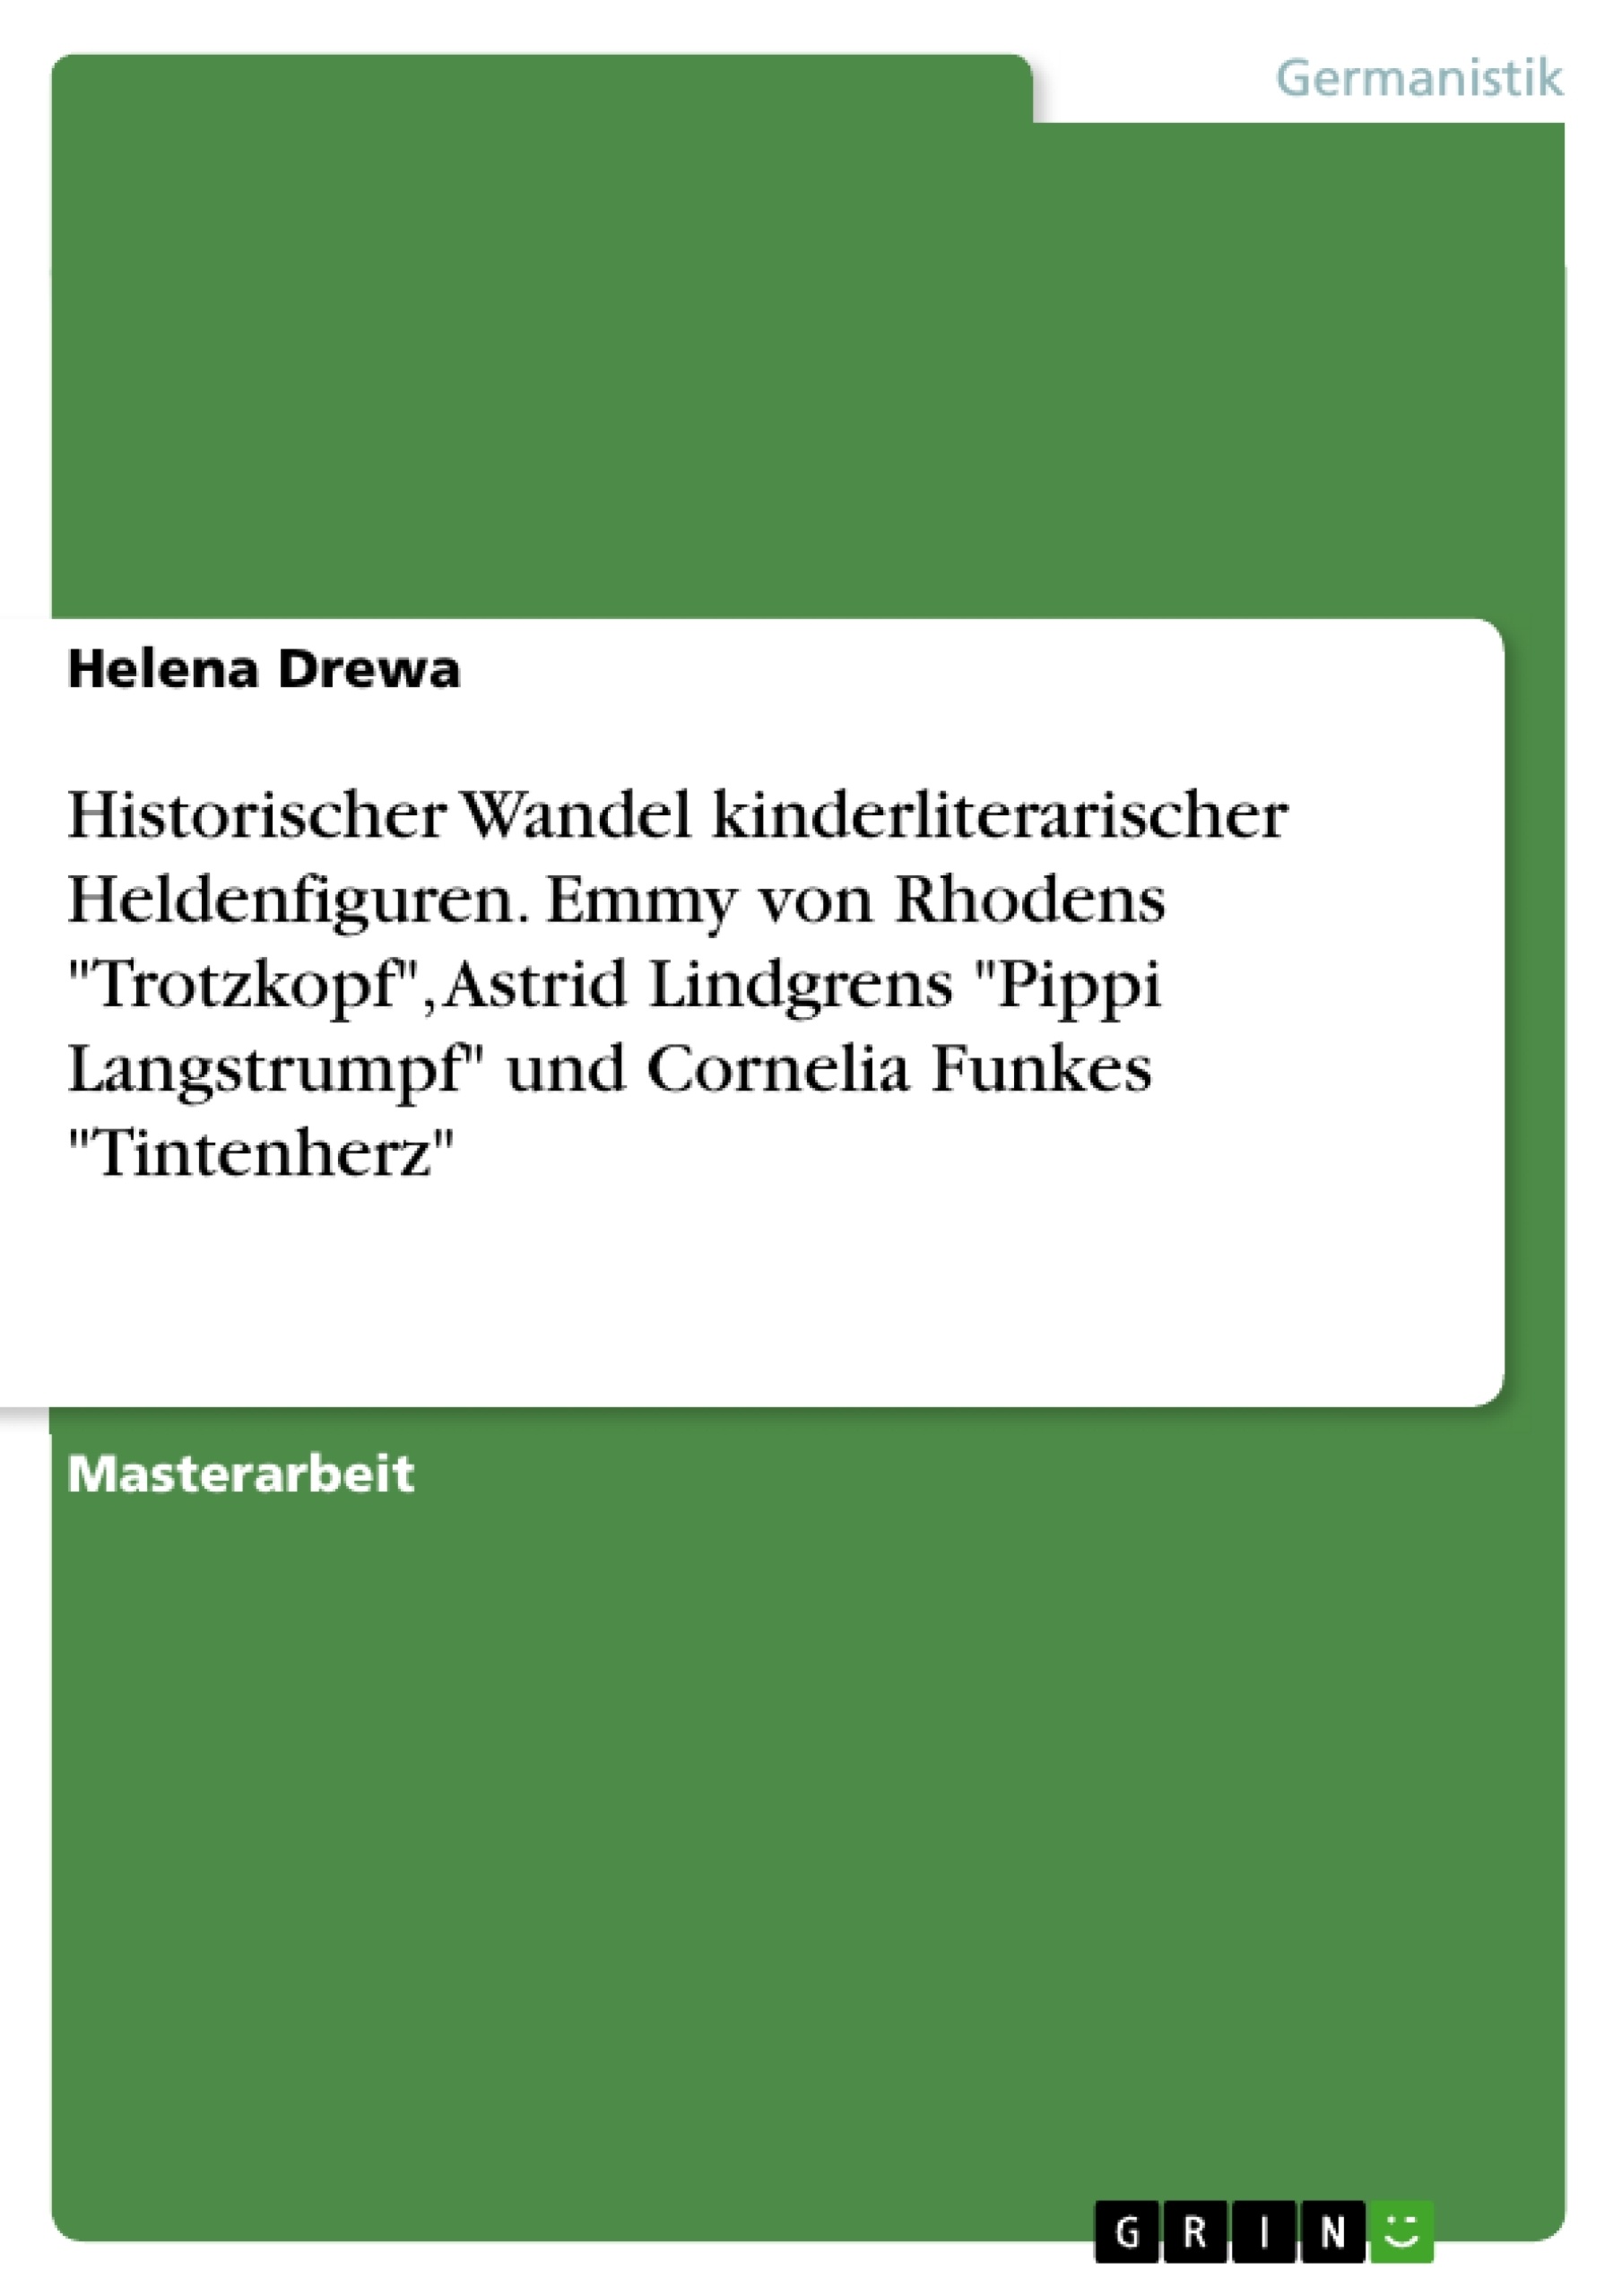 Título: Historischer Wandel kinderliterarischer Heldenfiguren. Emmy von Rhodens "Trotzkopf", Astrid Lindgrens "Pippi Langstrumpf" und Cornelia Funkes "Tintenherz"